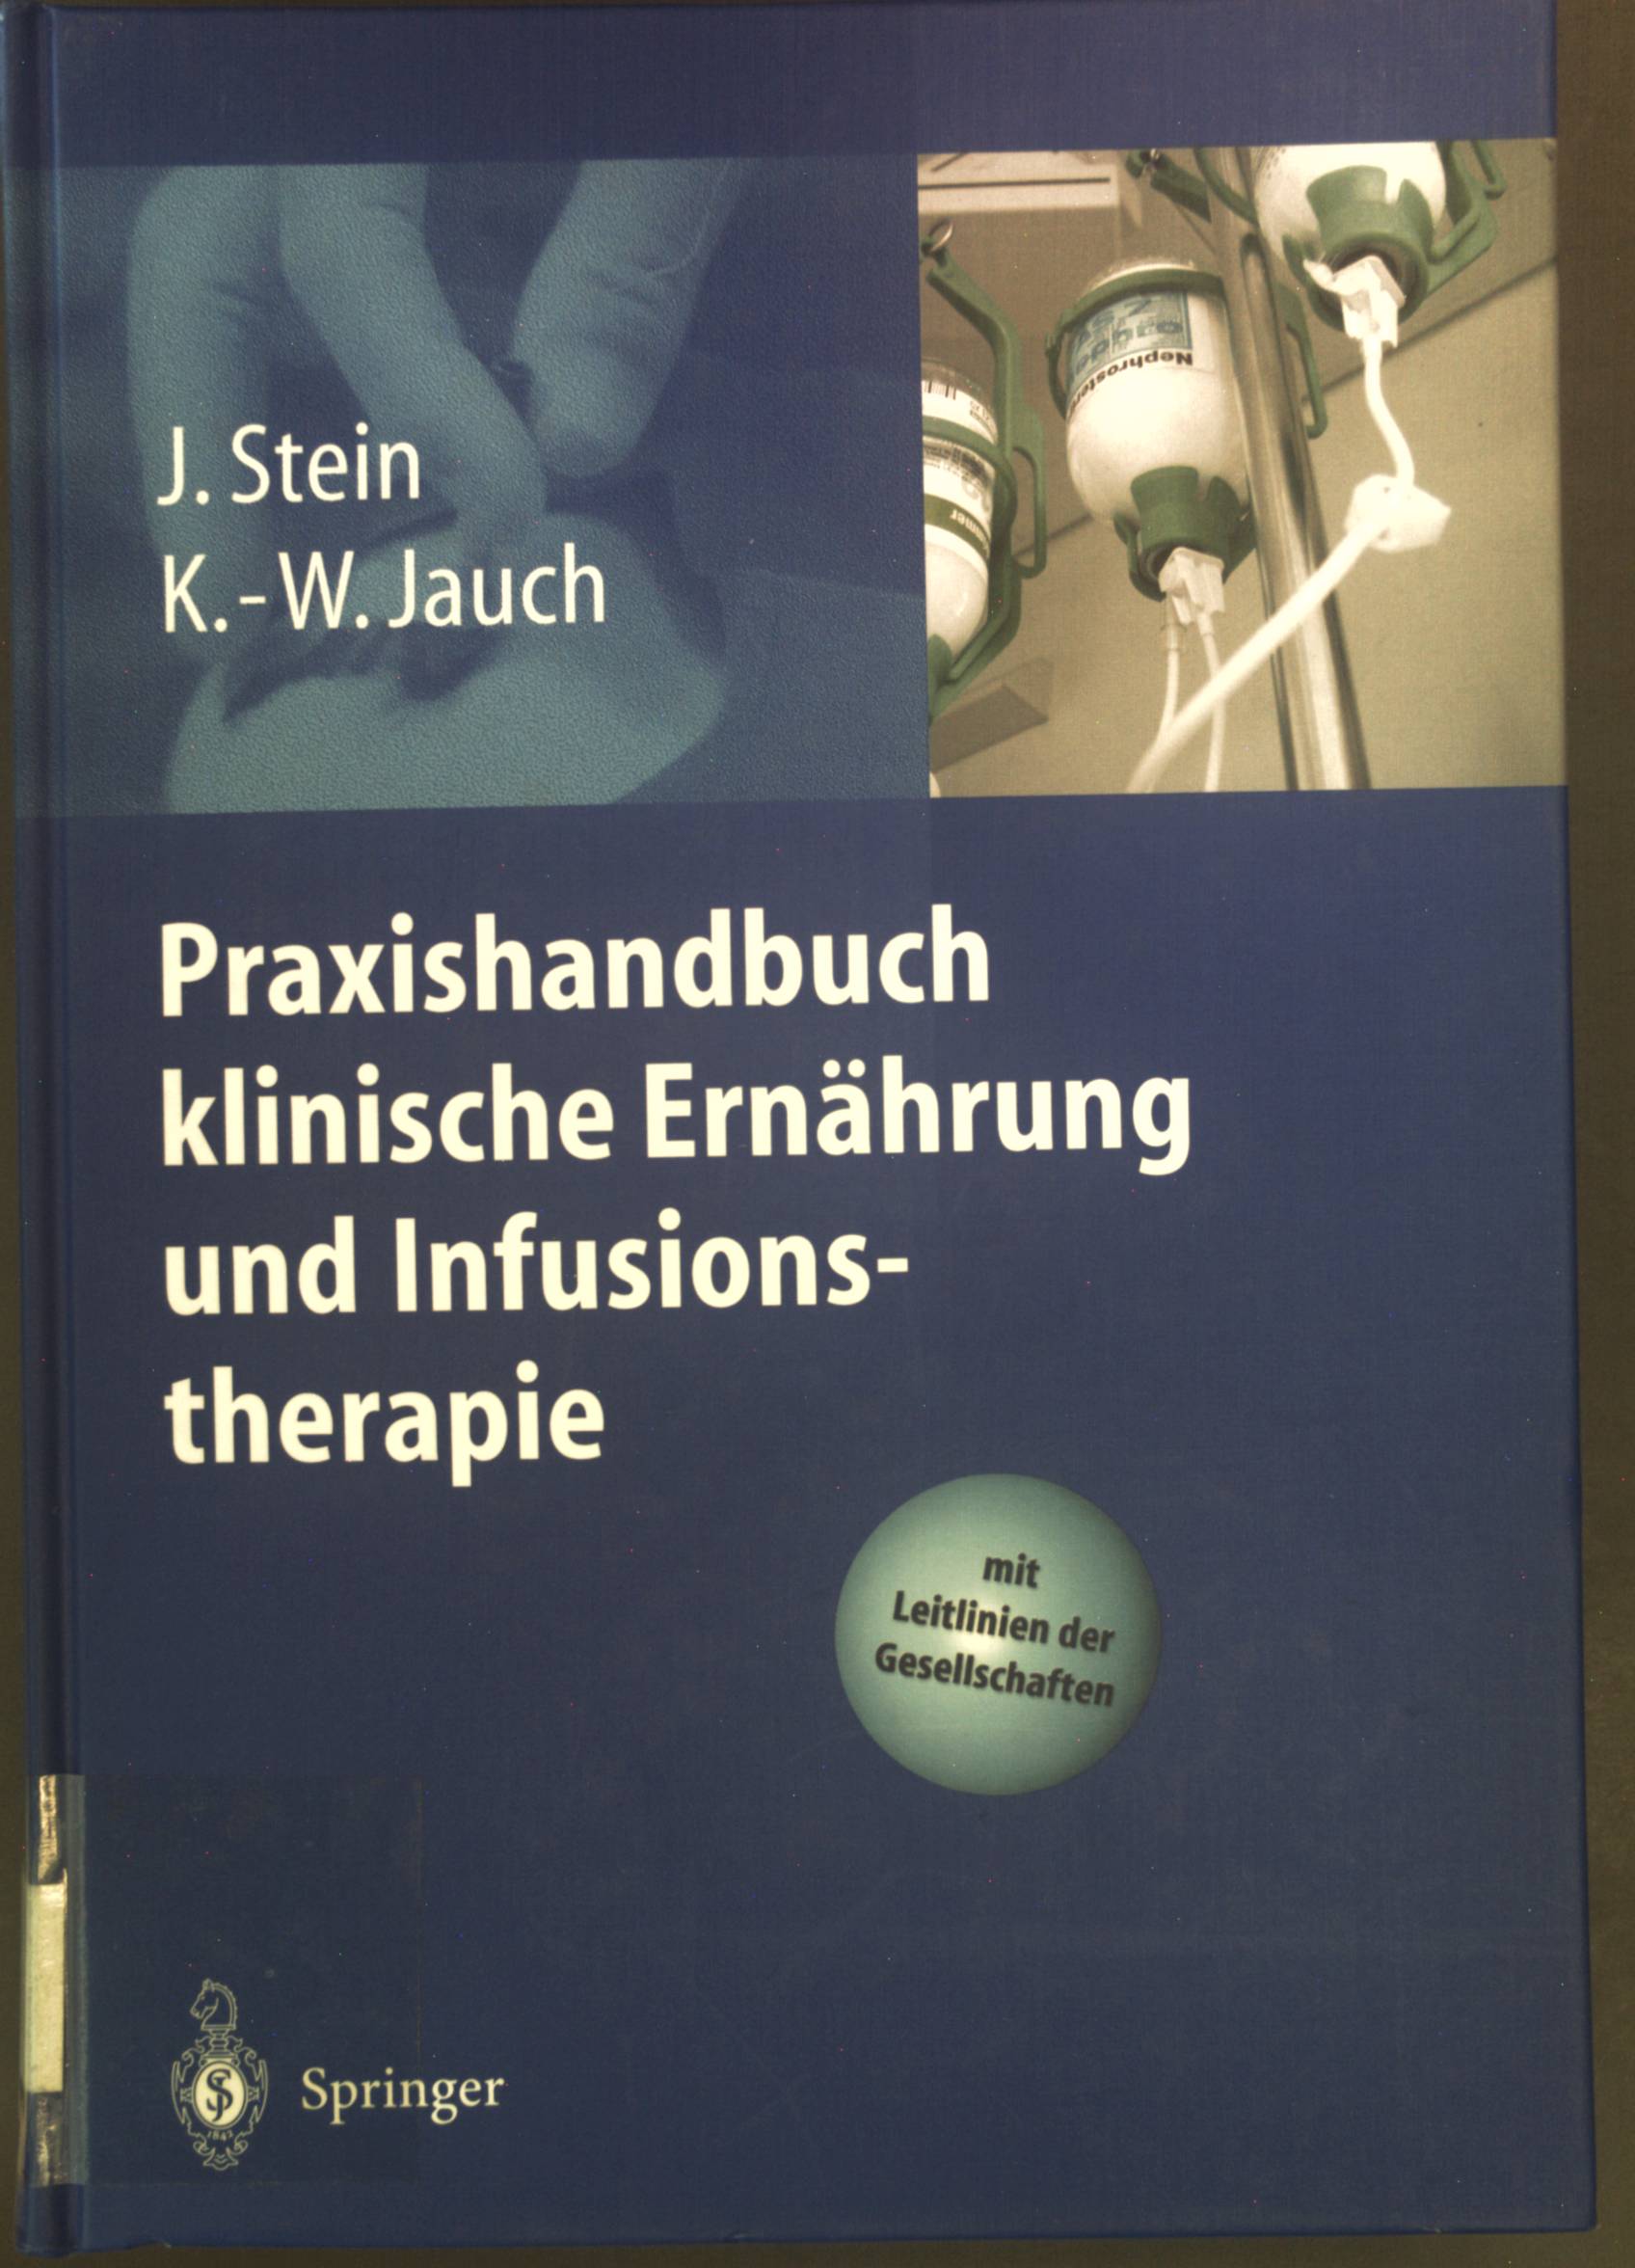 Praxishandbuch klinische Ernährung und Infusionstherapie. - Stein, Jürgen